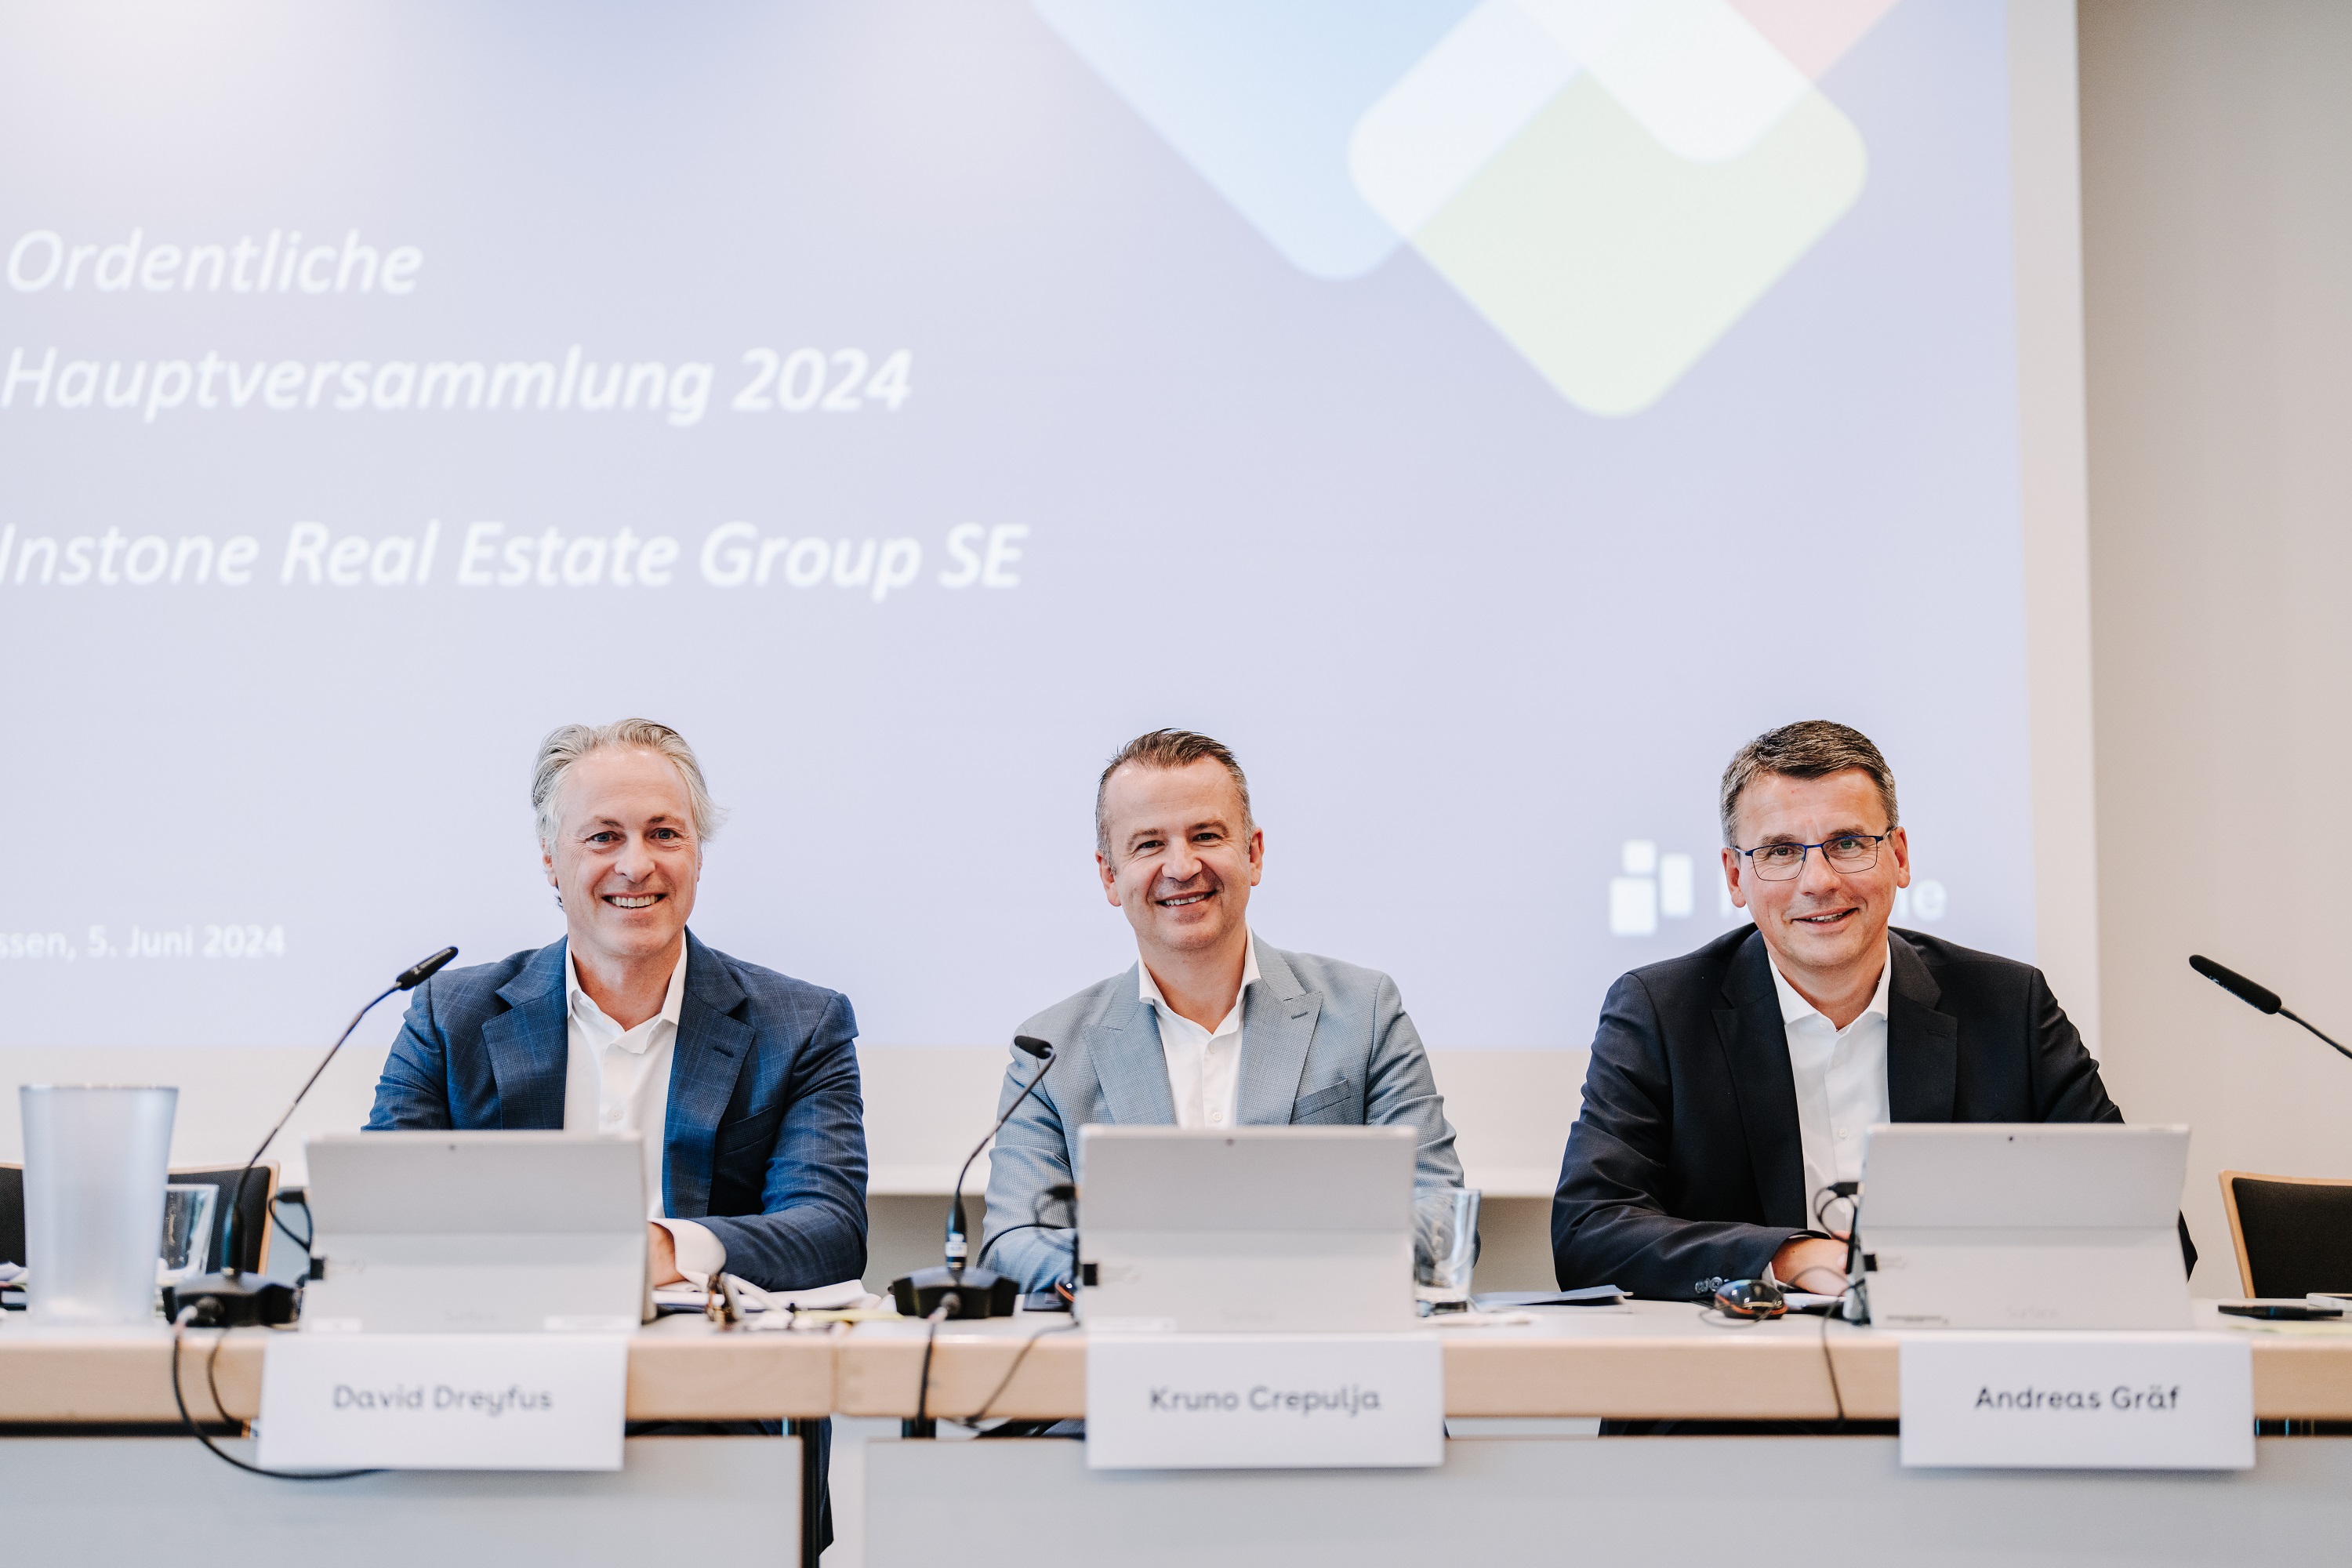 Hauptversammlung der Instone Real Estate Group SE beschließt Dividenden-Ausschüttung in Höhe von 0,33 Euro pro Aktie; erste Projektakquisitionen seit zwei Jahren 